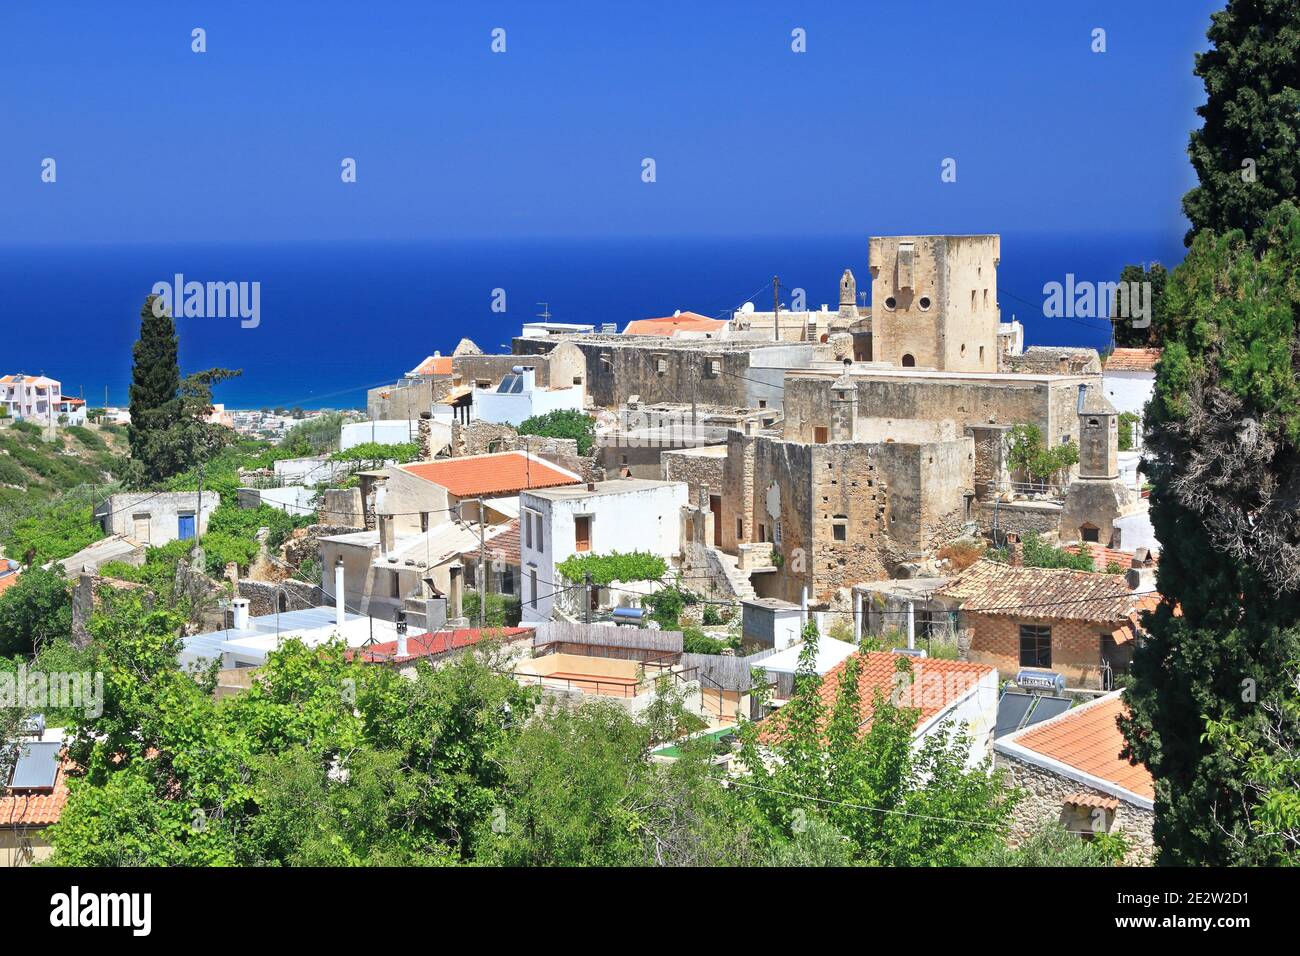 Maroulas, uno dei più bei villaggi tradizionali dell'isola di Creta, Grecia. Si trova nella regione di Rethymno, ed è conosciuta per le sue torri ocra Foto Stock